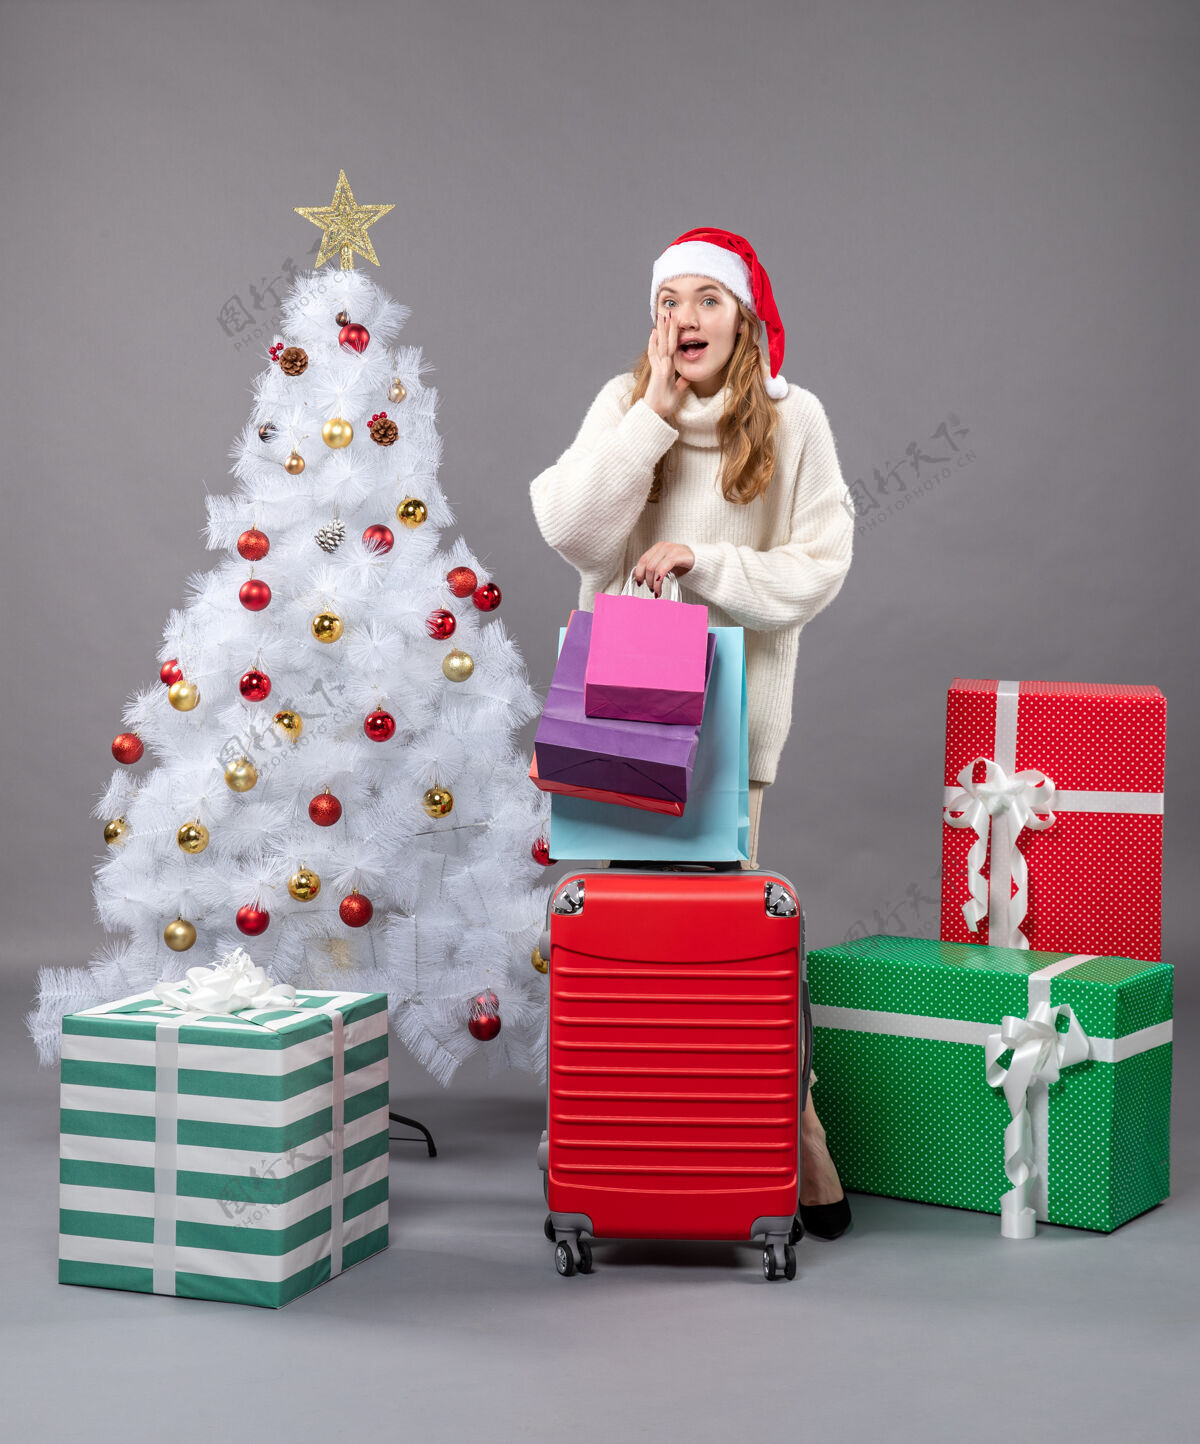 灰色正面图惊讶的金发女孩戴着圣诞帽 手里拿着红色的手提包和购物袋圣诞帽圣诞树盒子